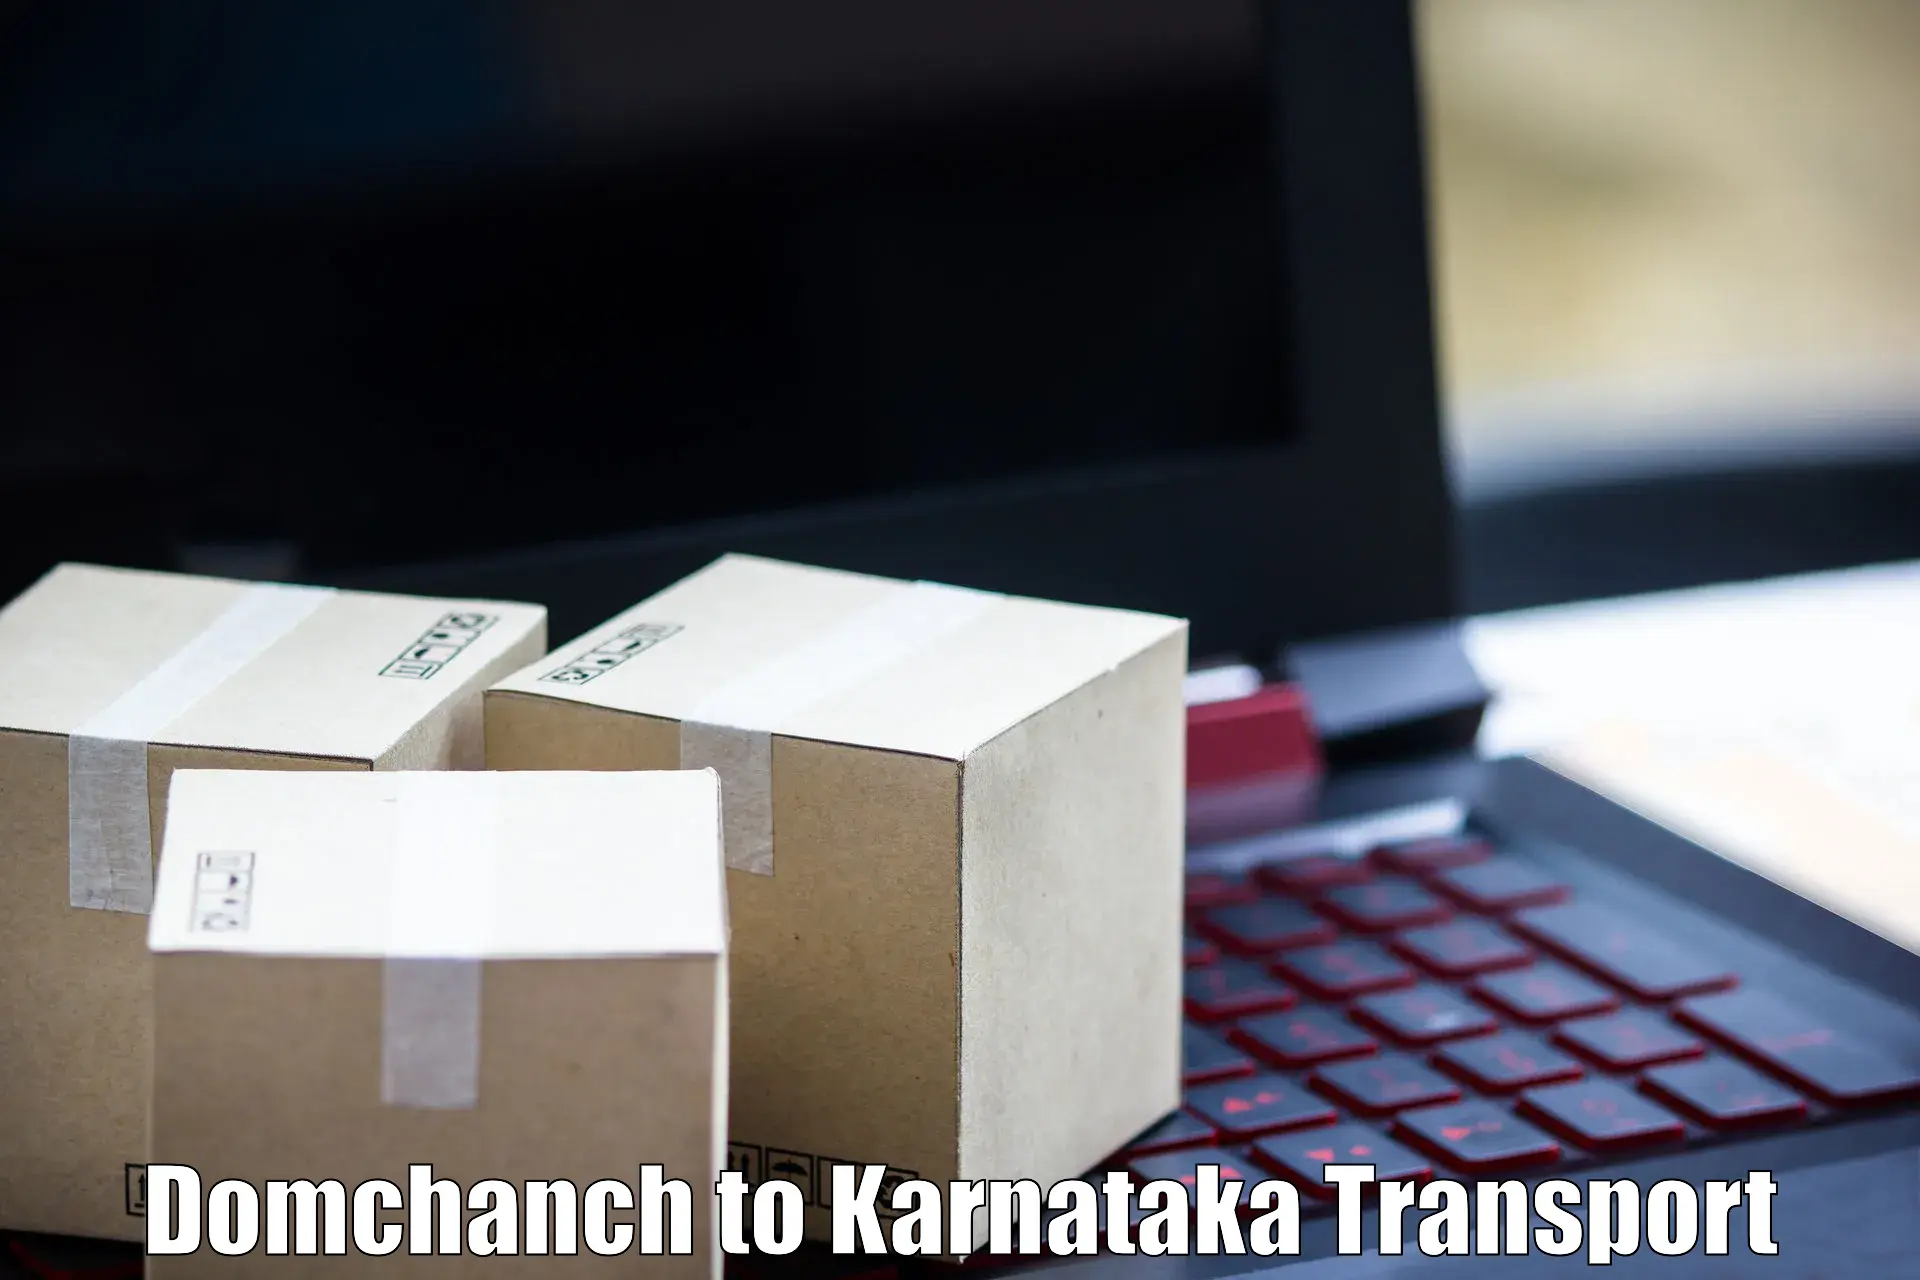 Interstate transport services Domchanch to Channagiri